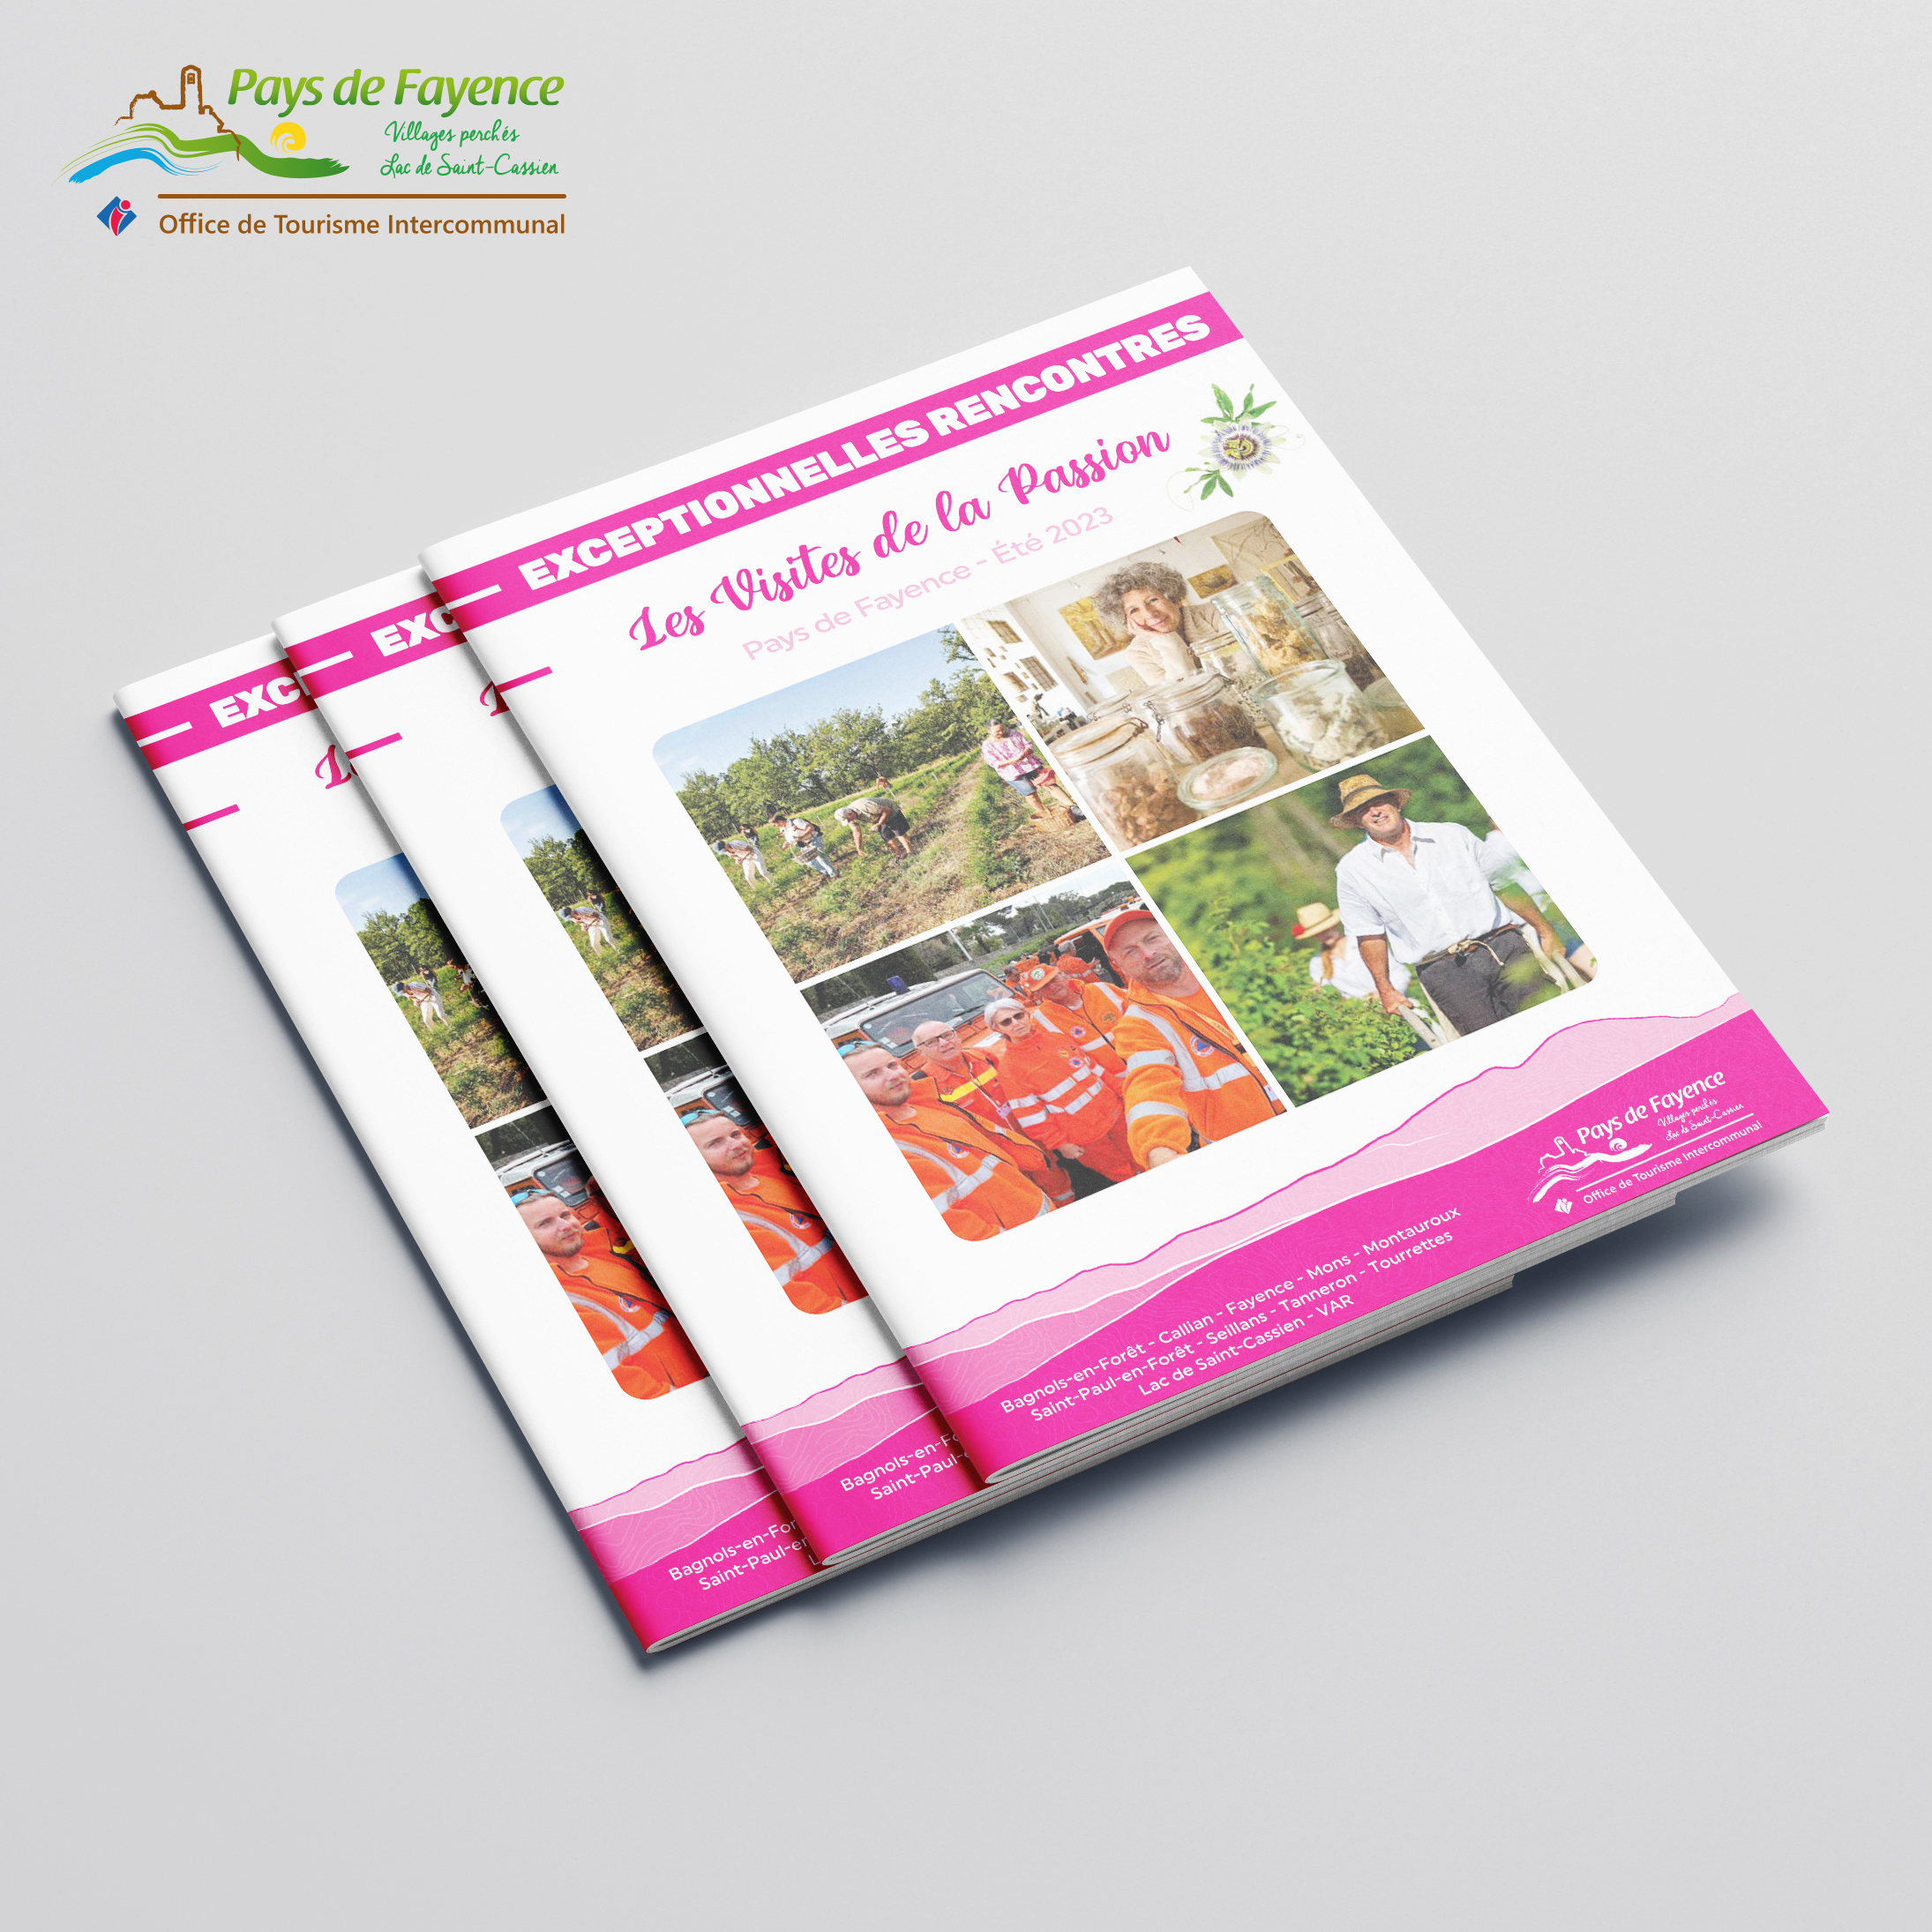 Brochure Les Visites de la Passion pour l'Office de Tourisme Intercommunal du Pays de Fayence